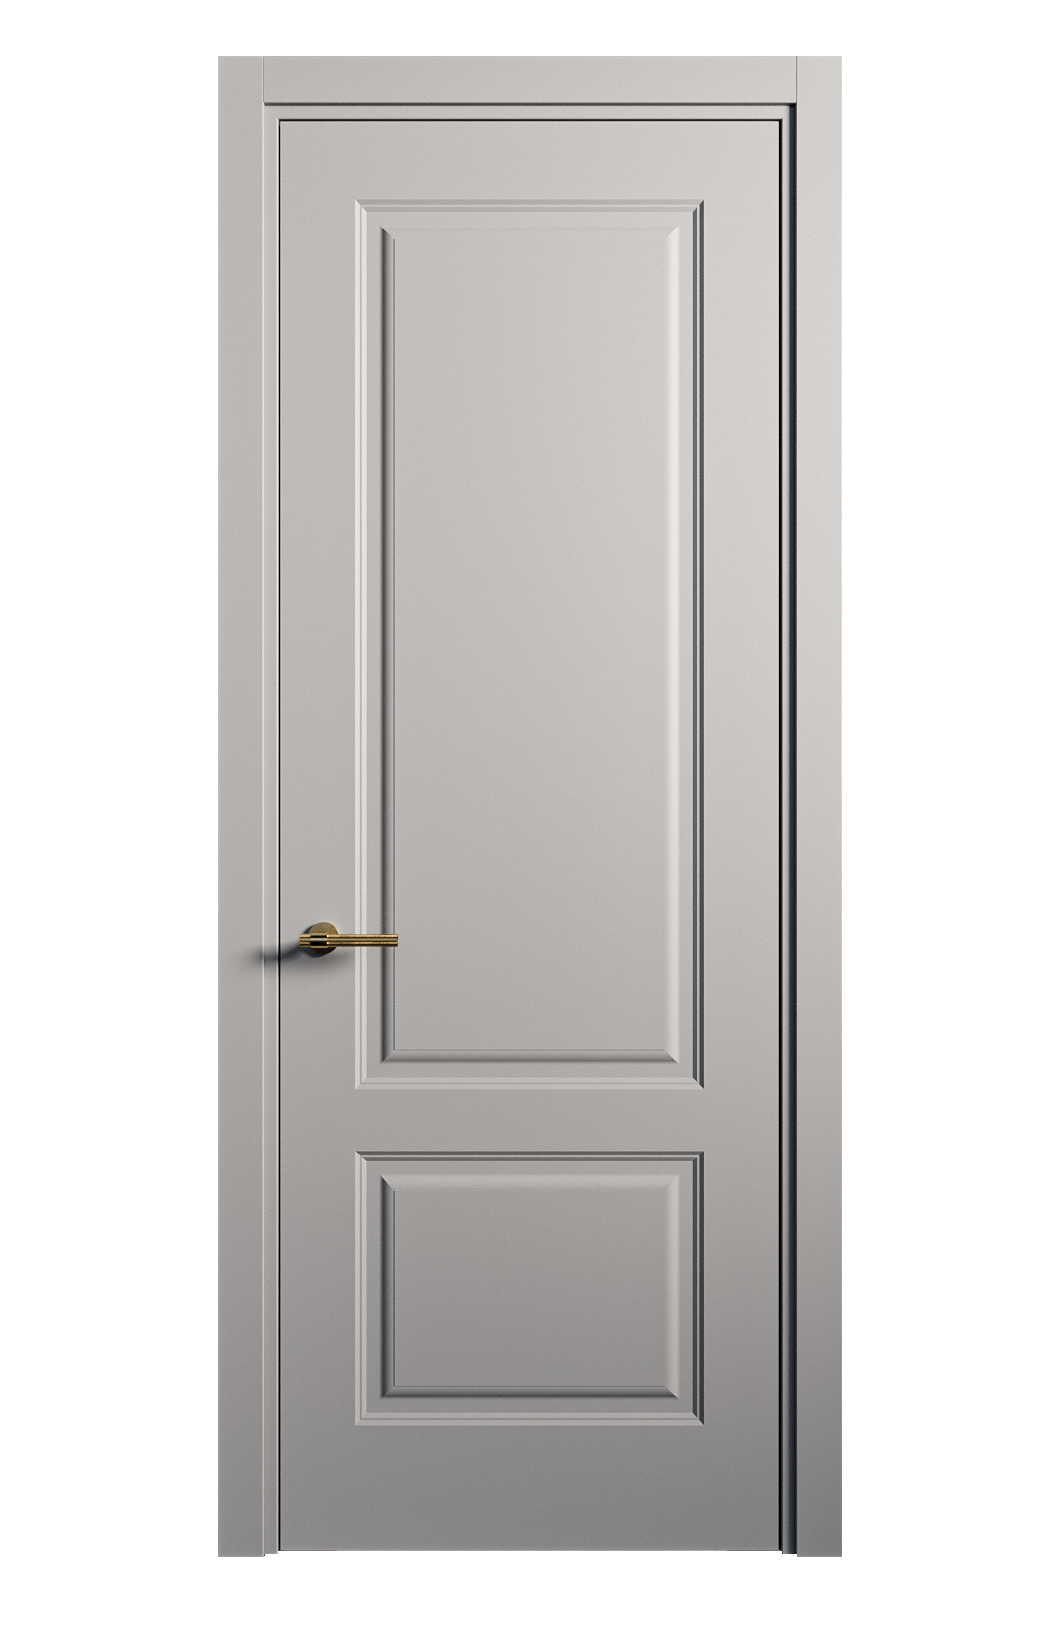 Межкомнатная дверь Вита-1 глухая эмаль ral 7040 26269